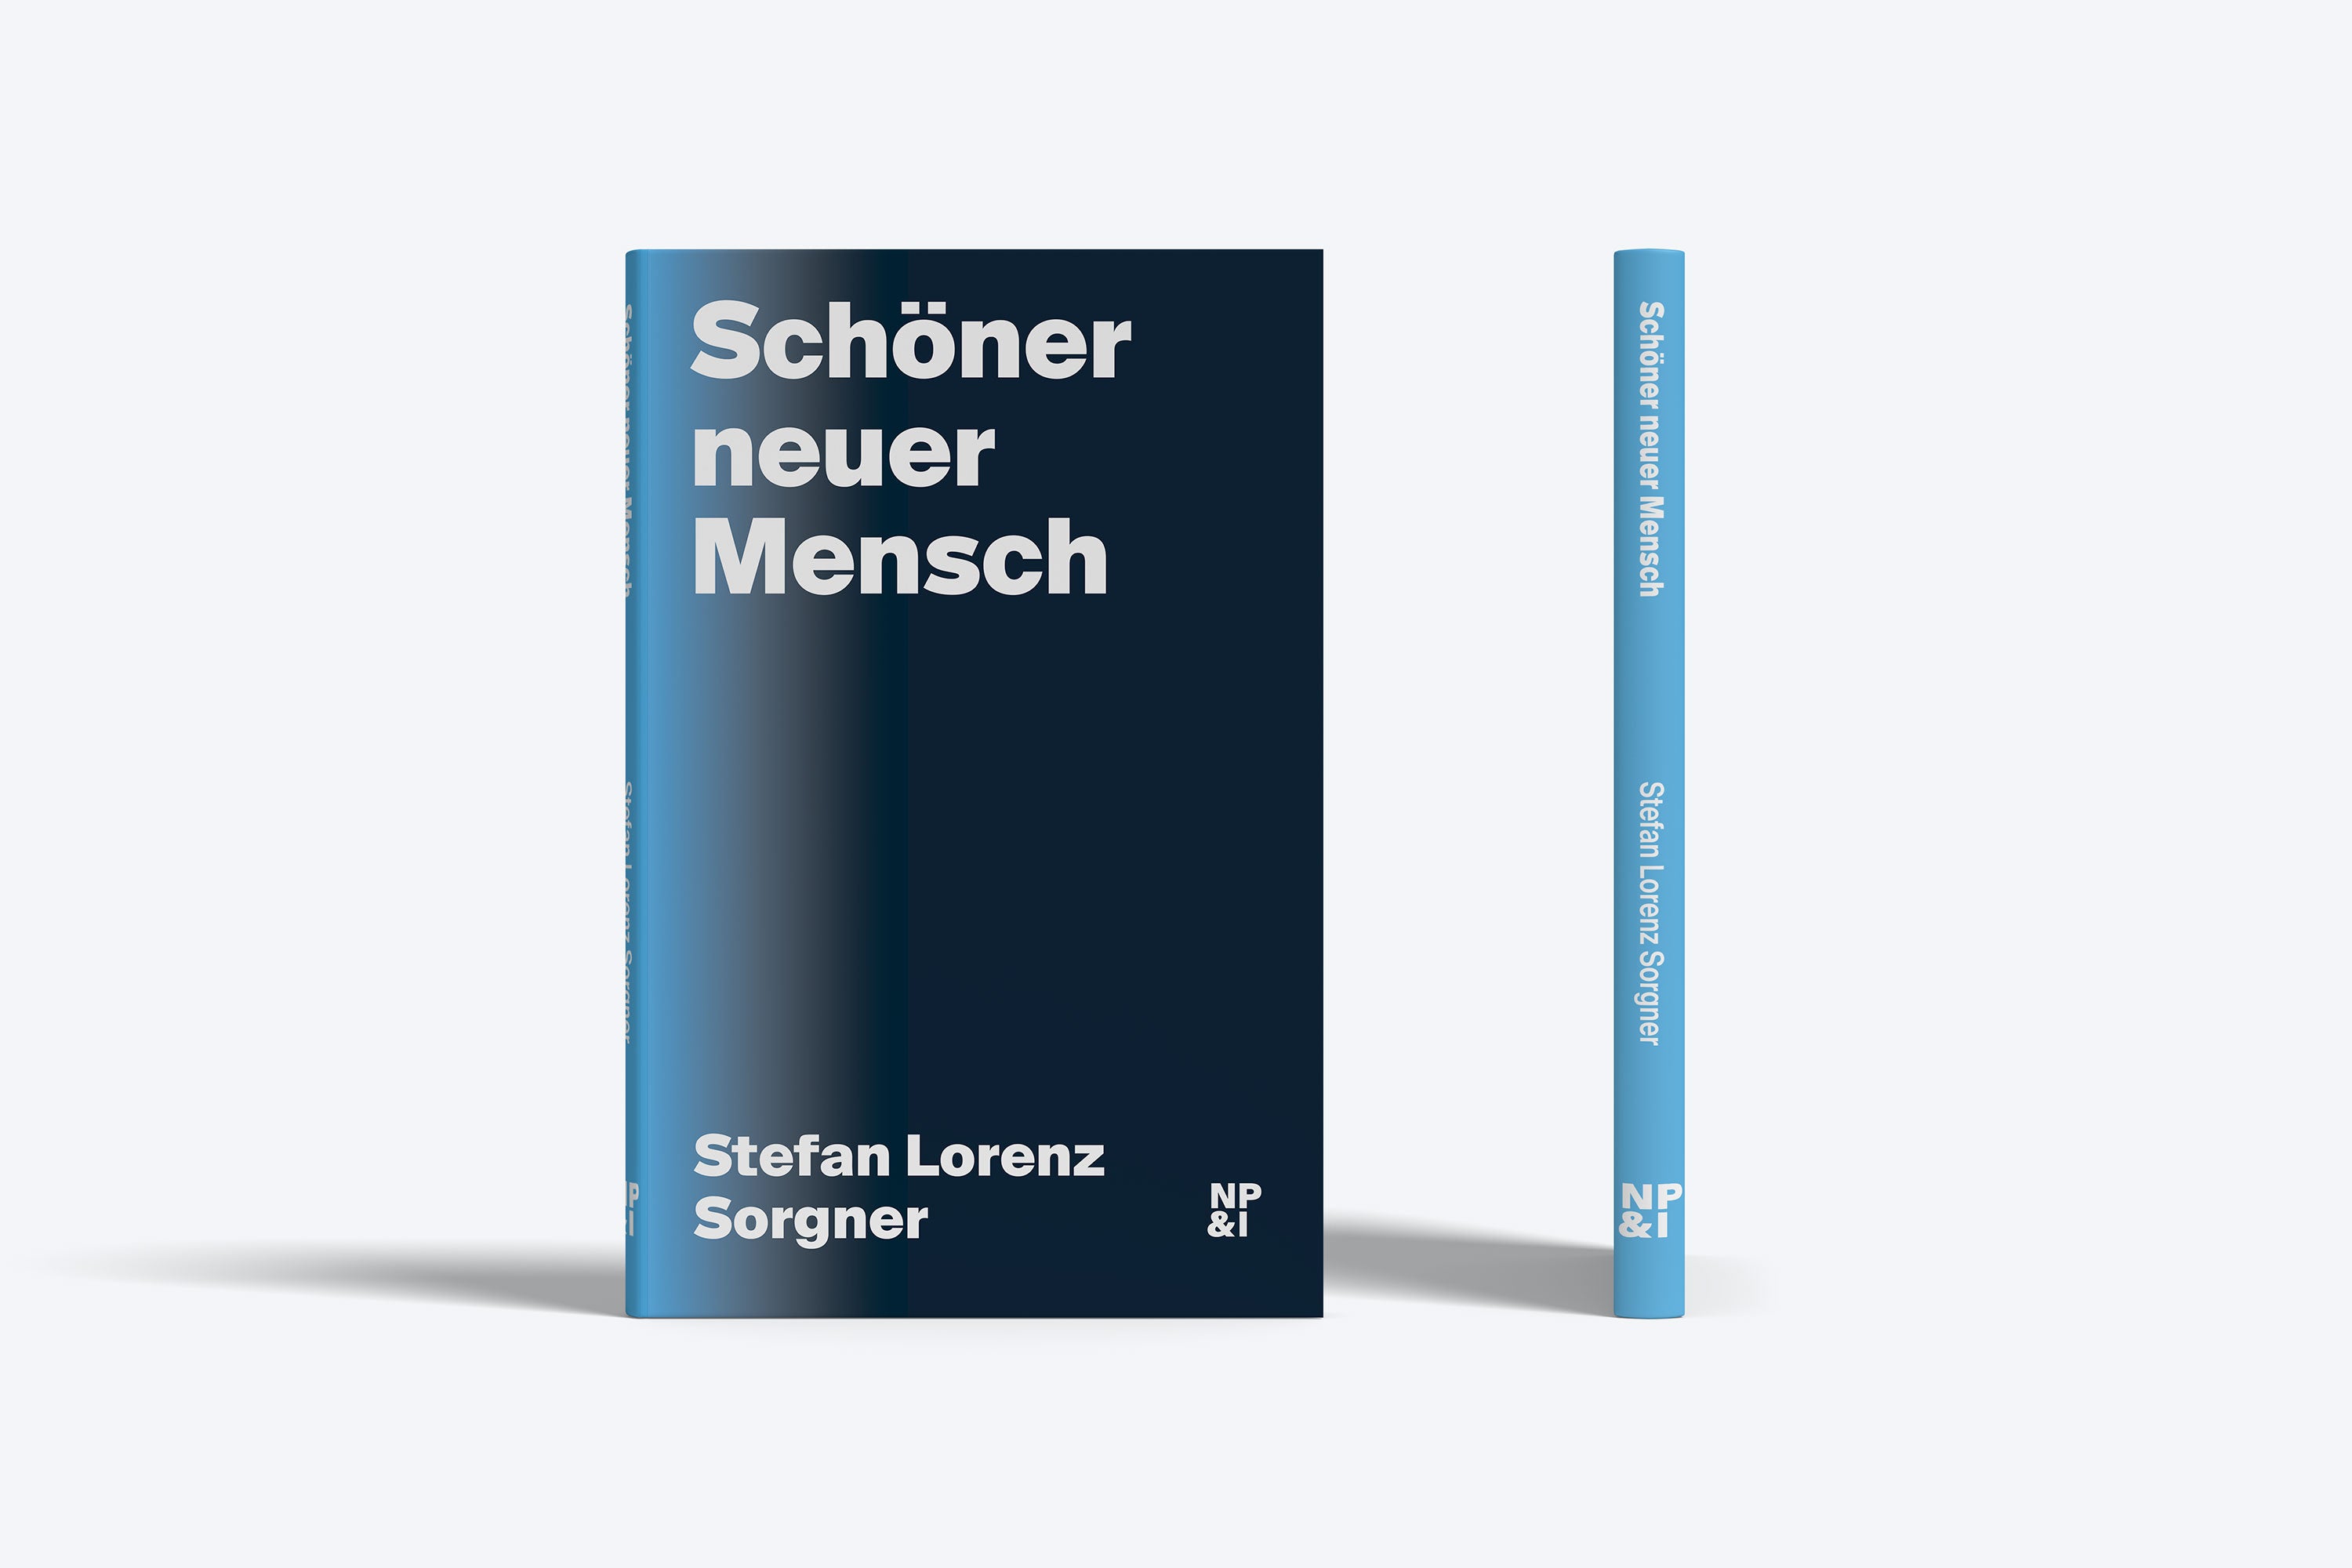 Buch Sorgner Schöner neuer Mensch Nicolai Verlag